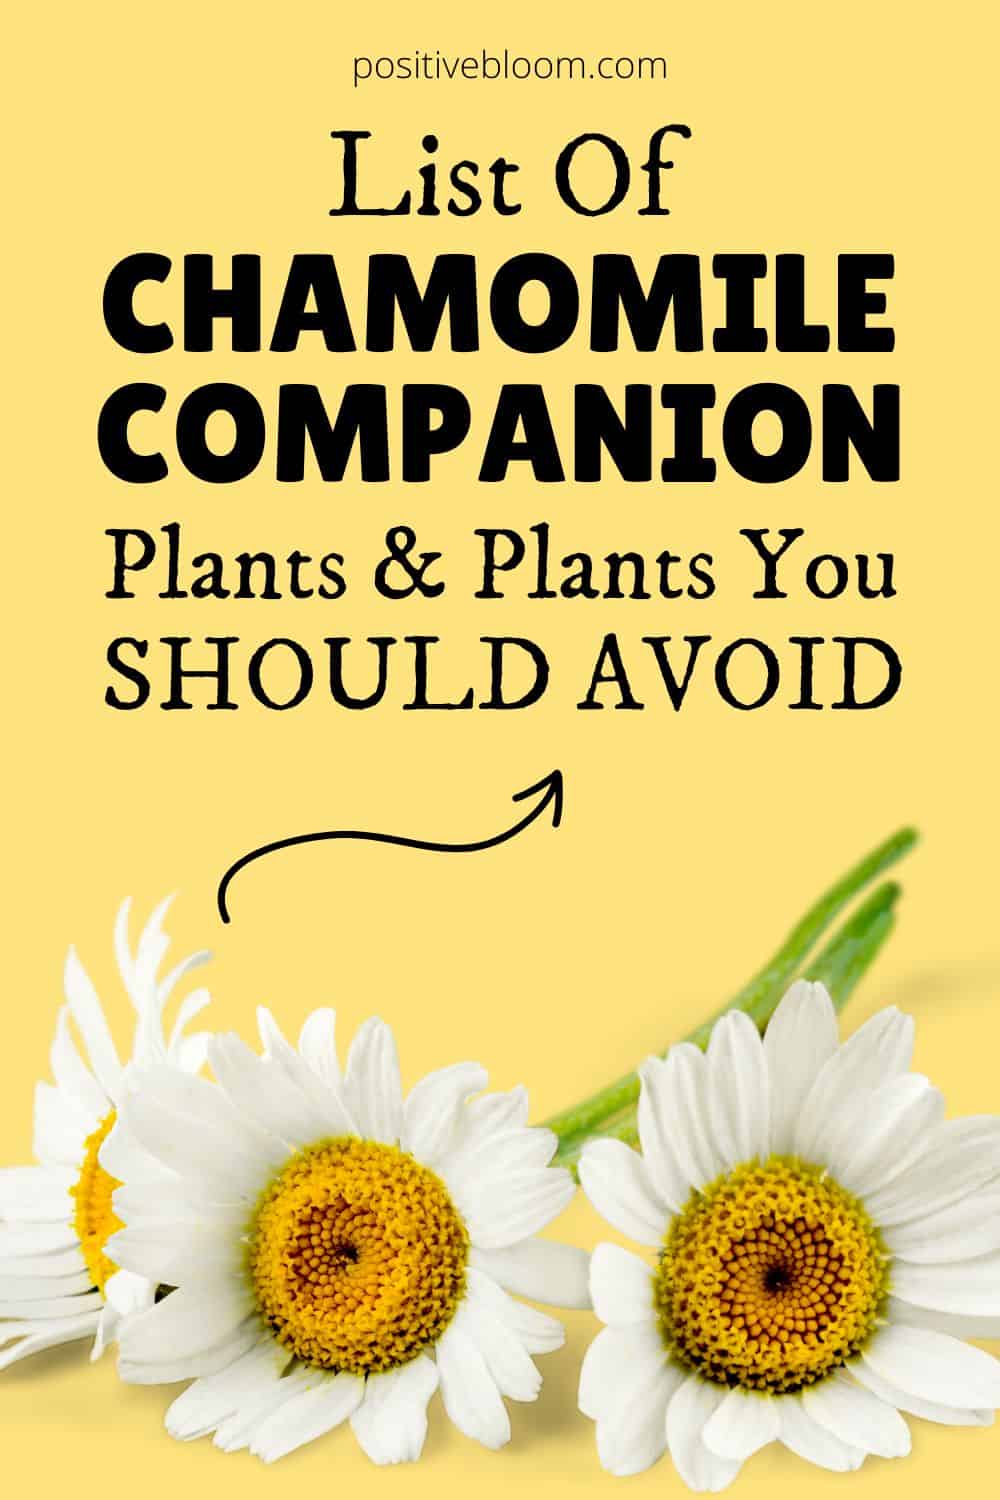 List Of Chamomile Companion Plants & Plants You Should Avoid Pinterest